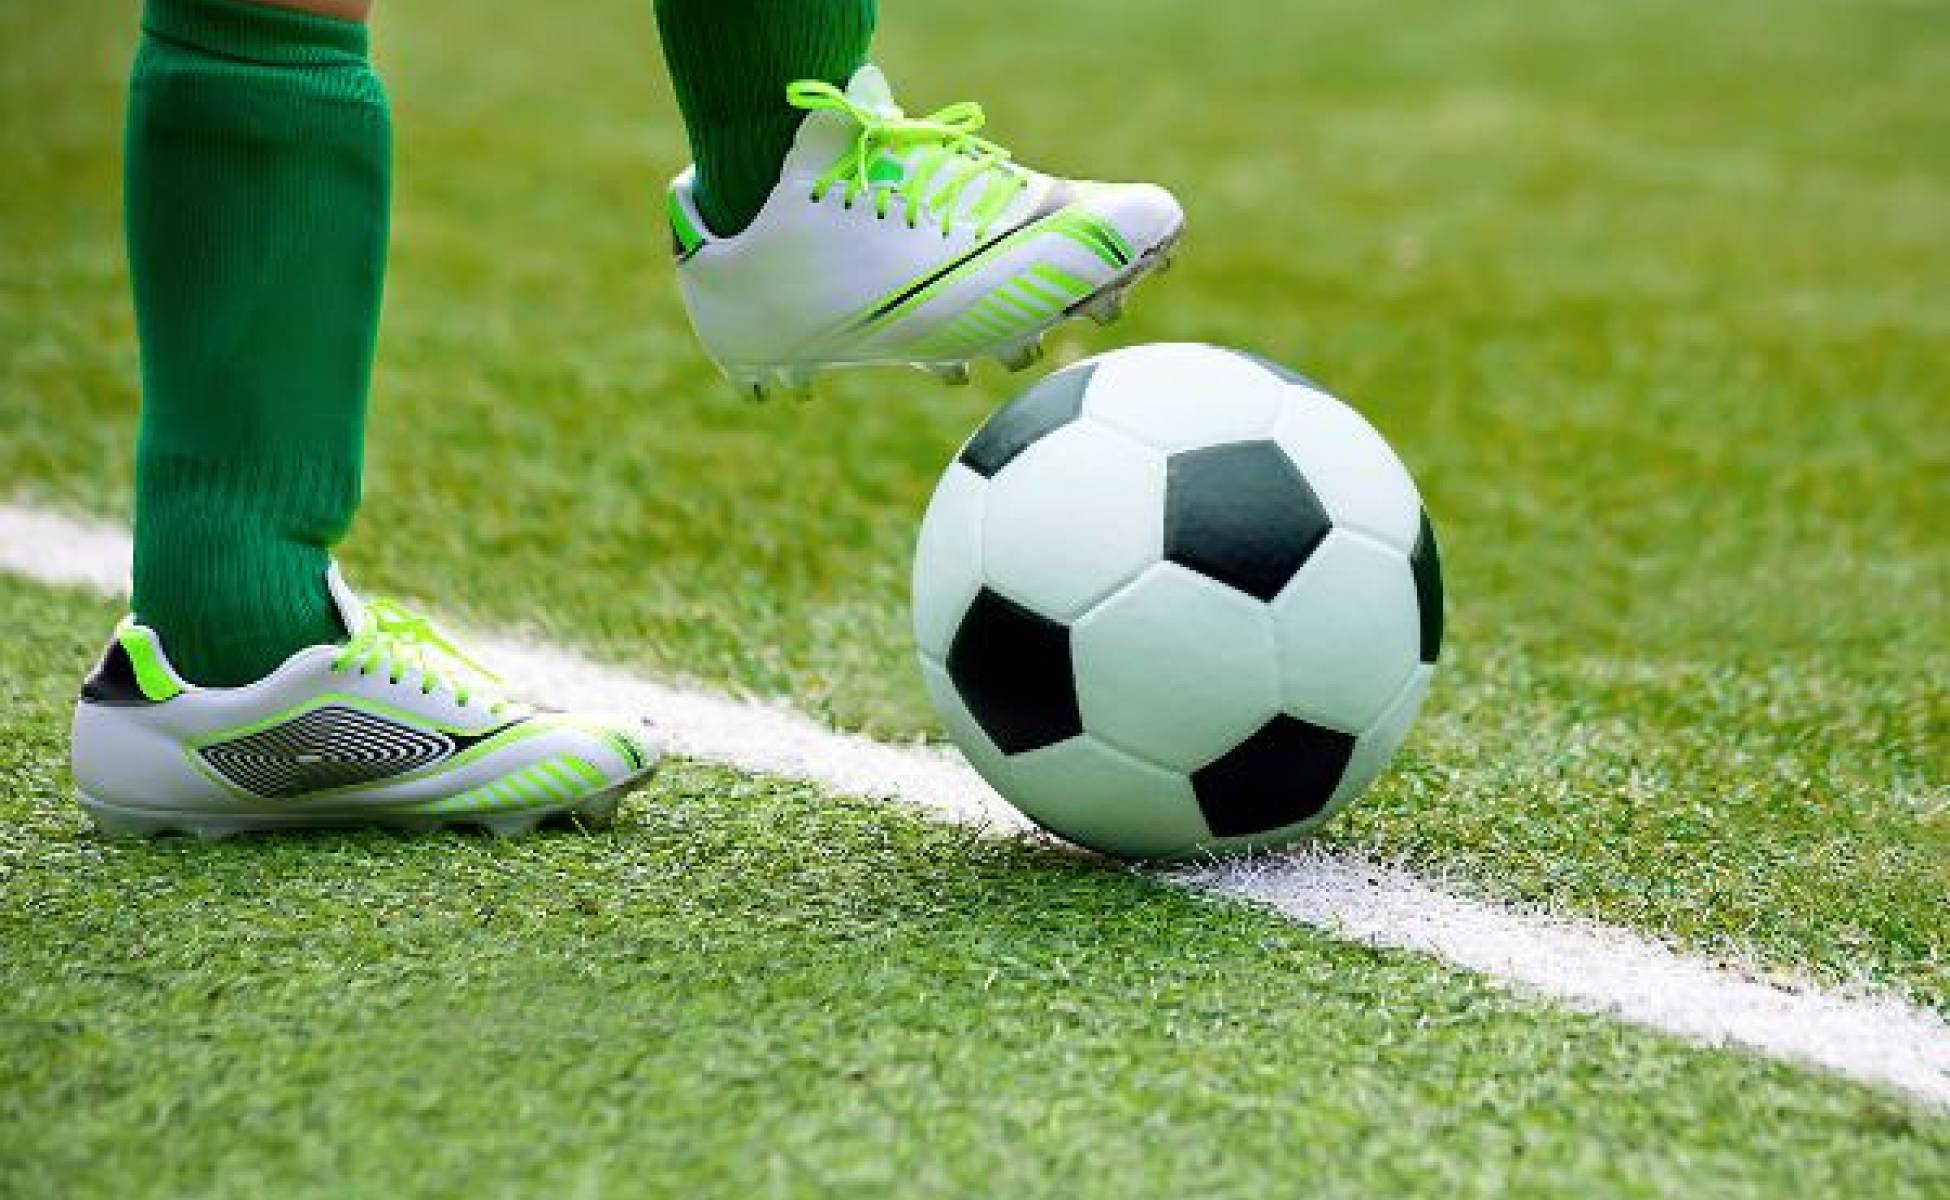 Piłka nożna – jak znaleźć motywację do regularnego treningu